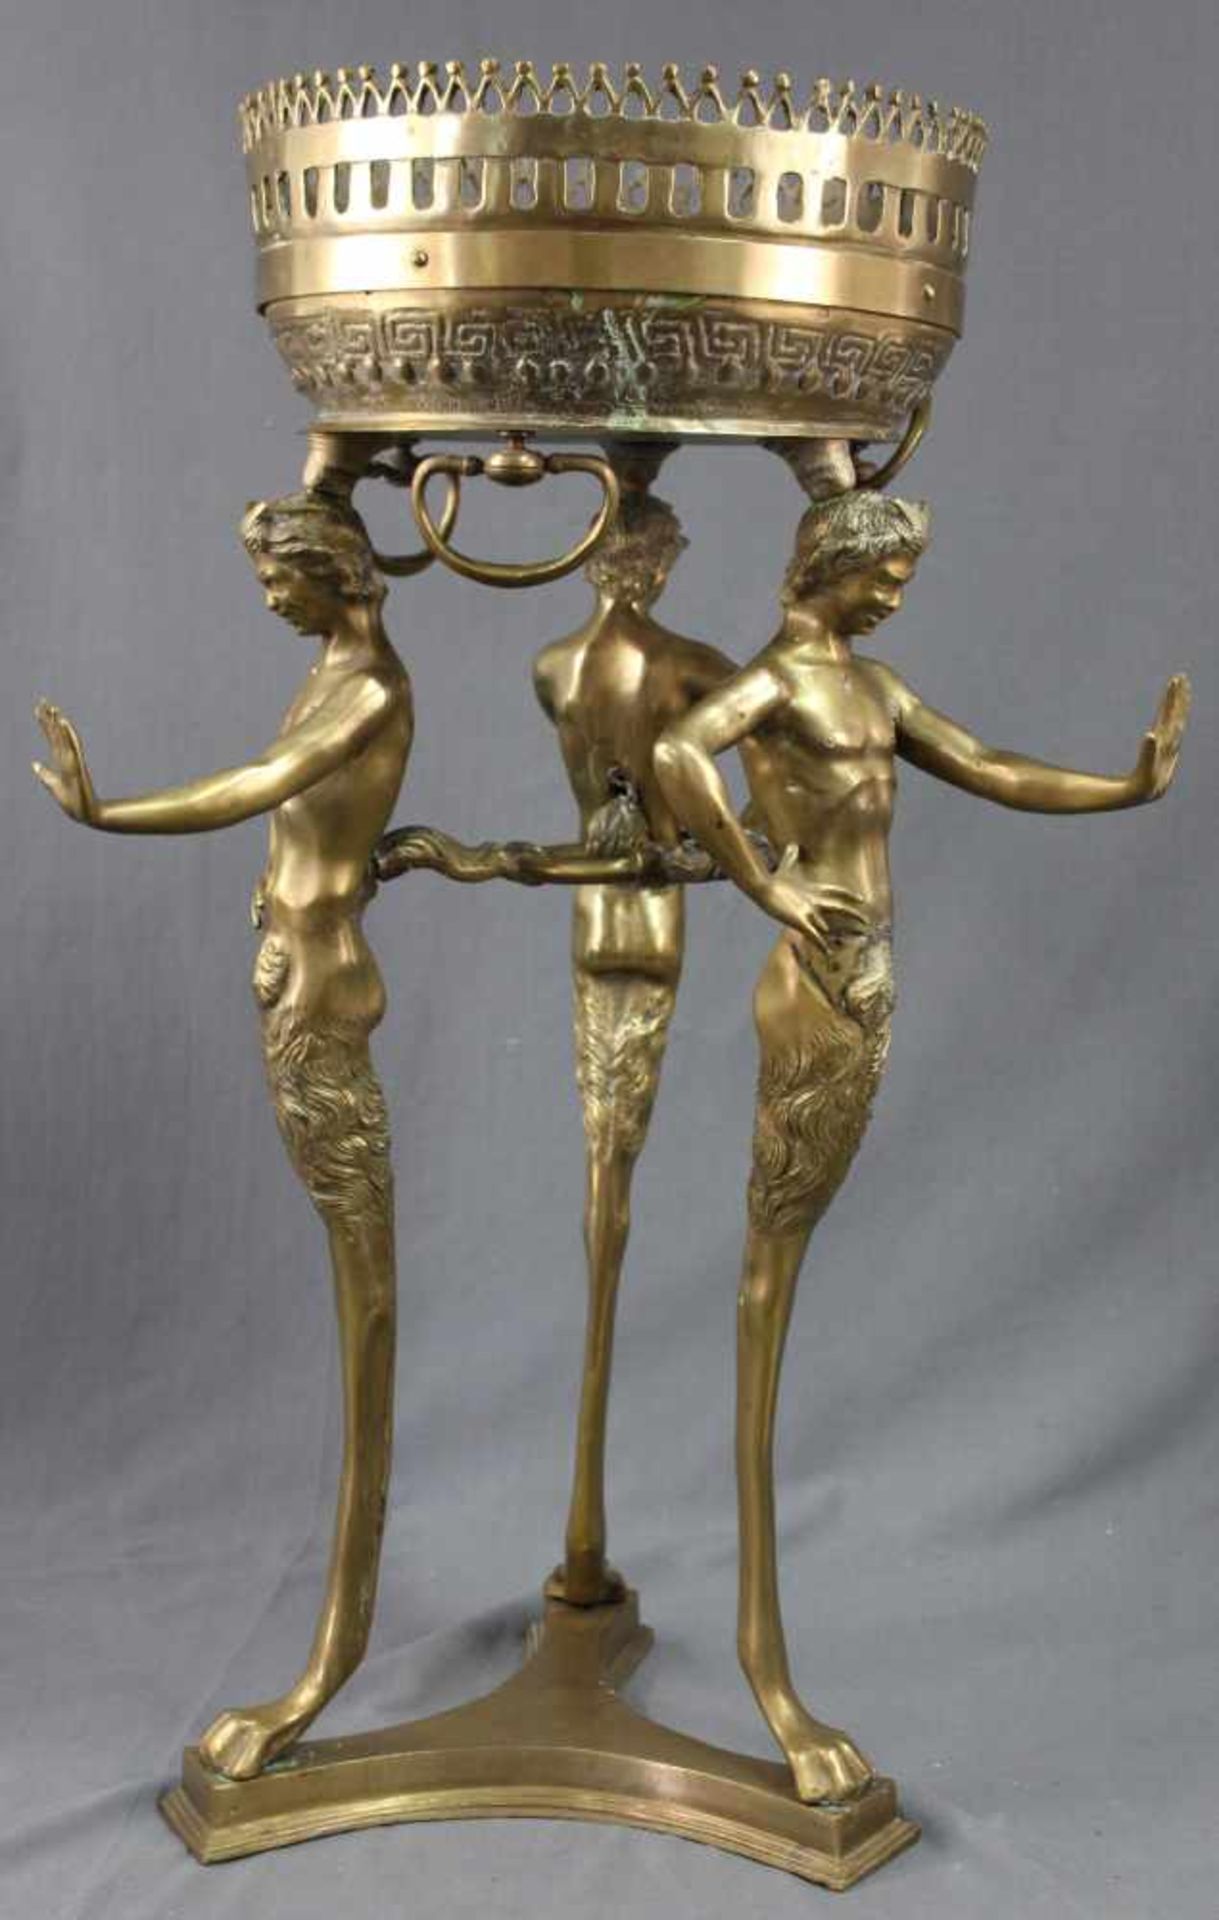 Blumensäule Messing. In der Art des Jugendstil. 88 cm x 63 cm. Flower column brass. In Art Nouveau